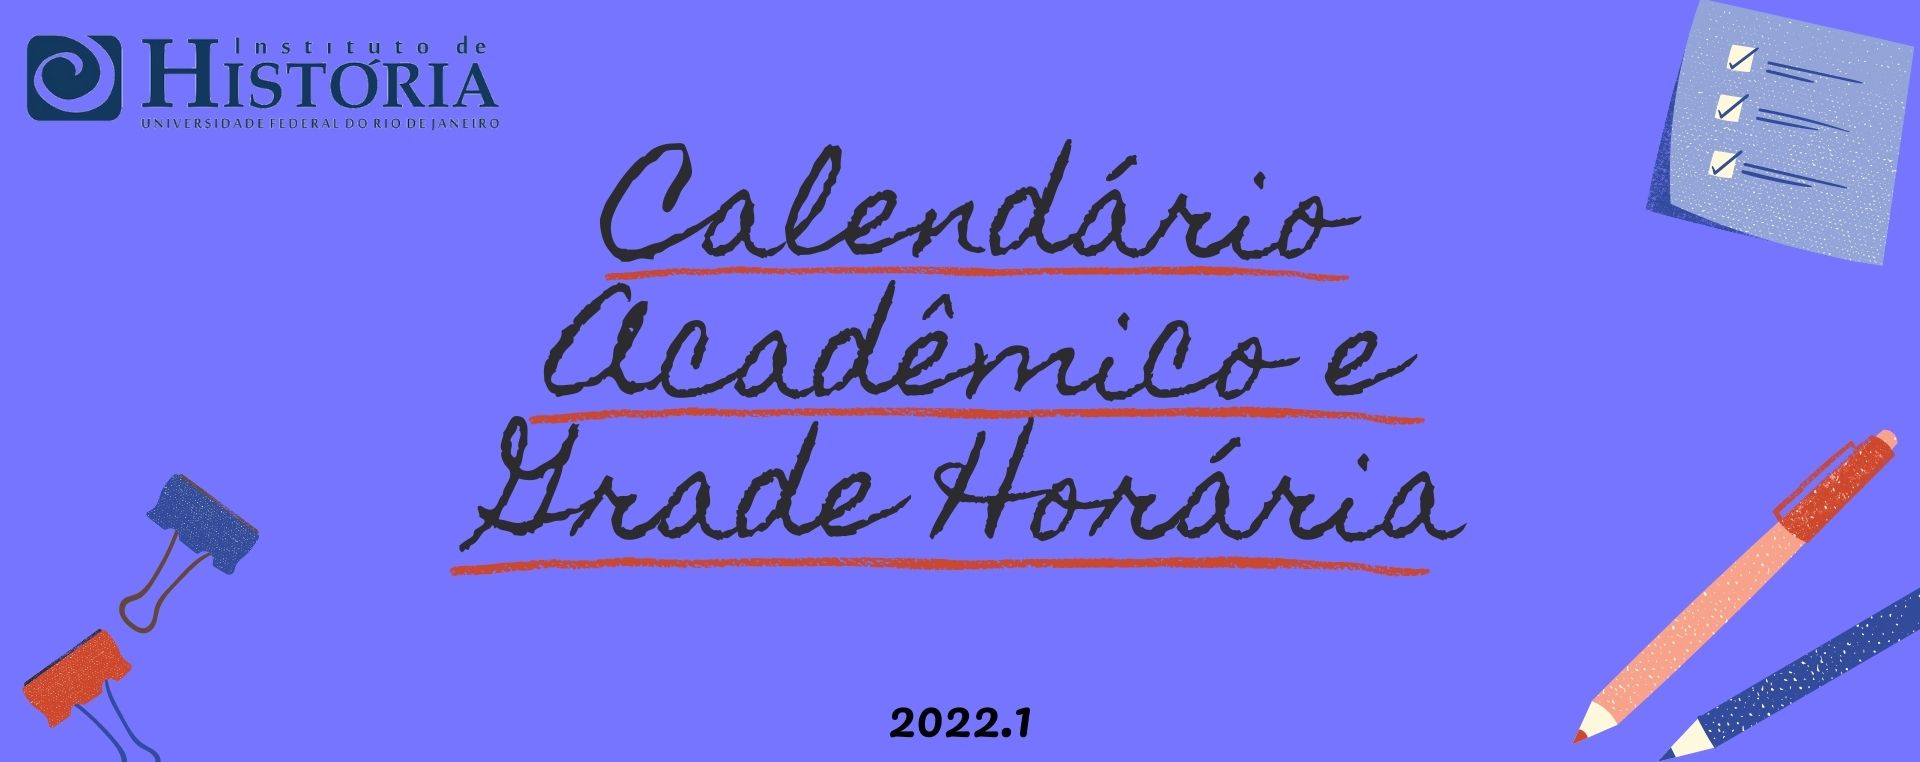 Calendario e Grade Horaria 2022.1